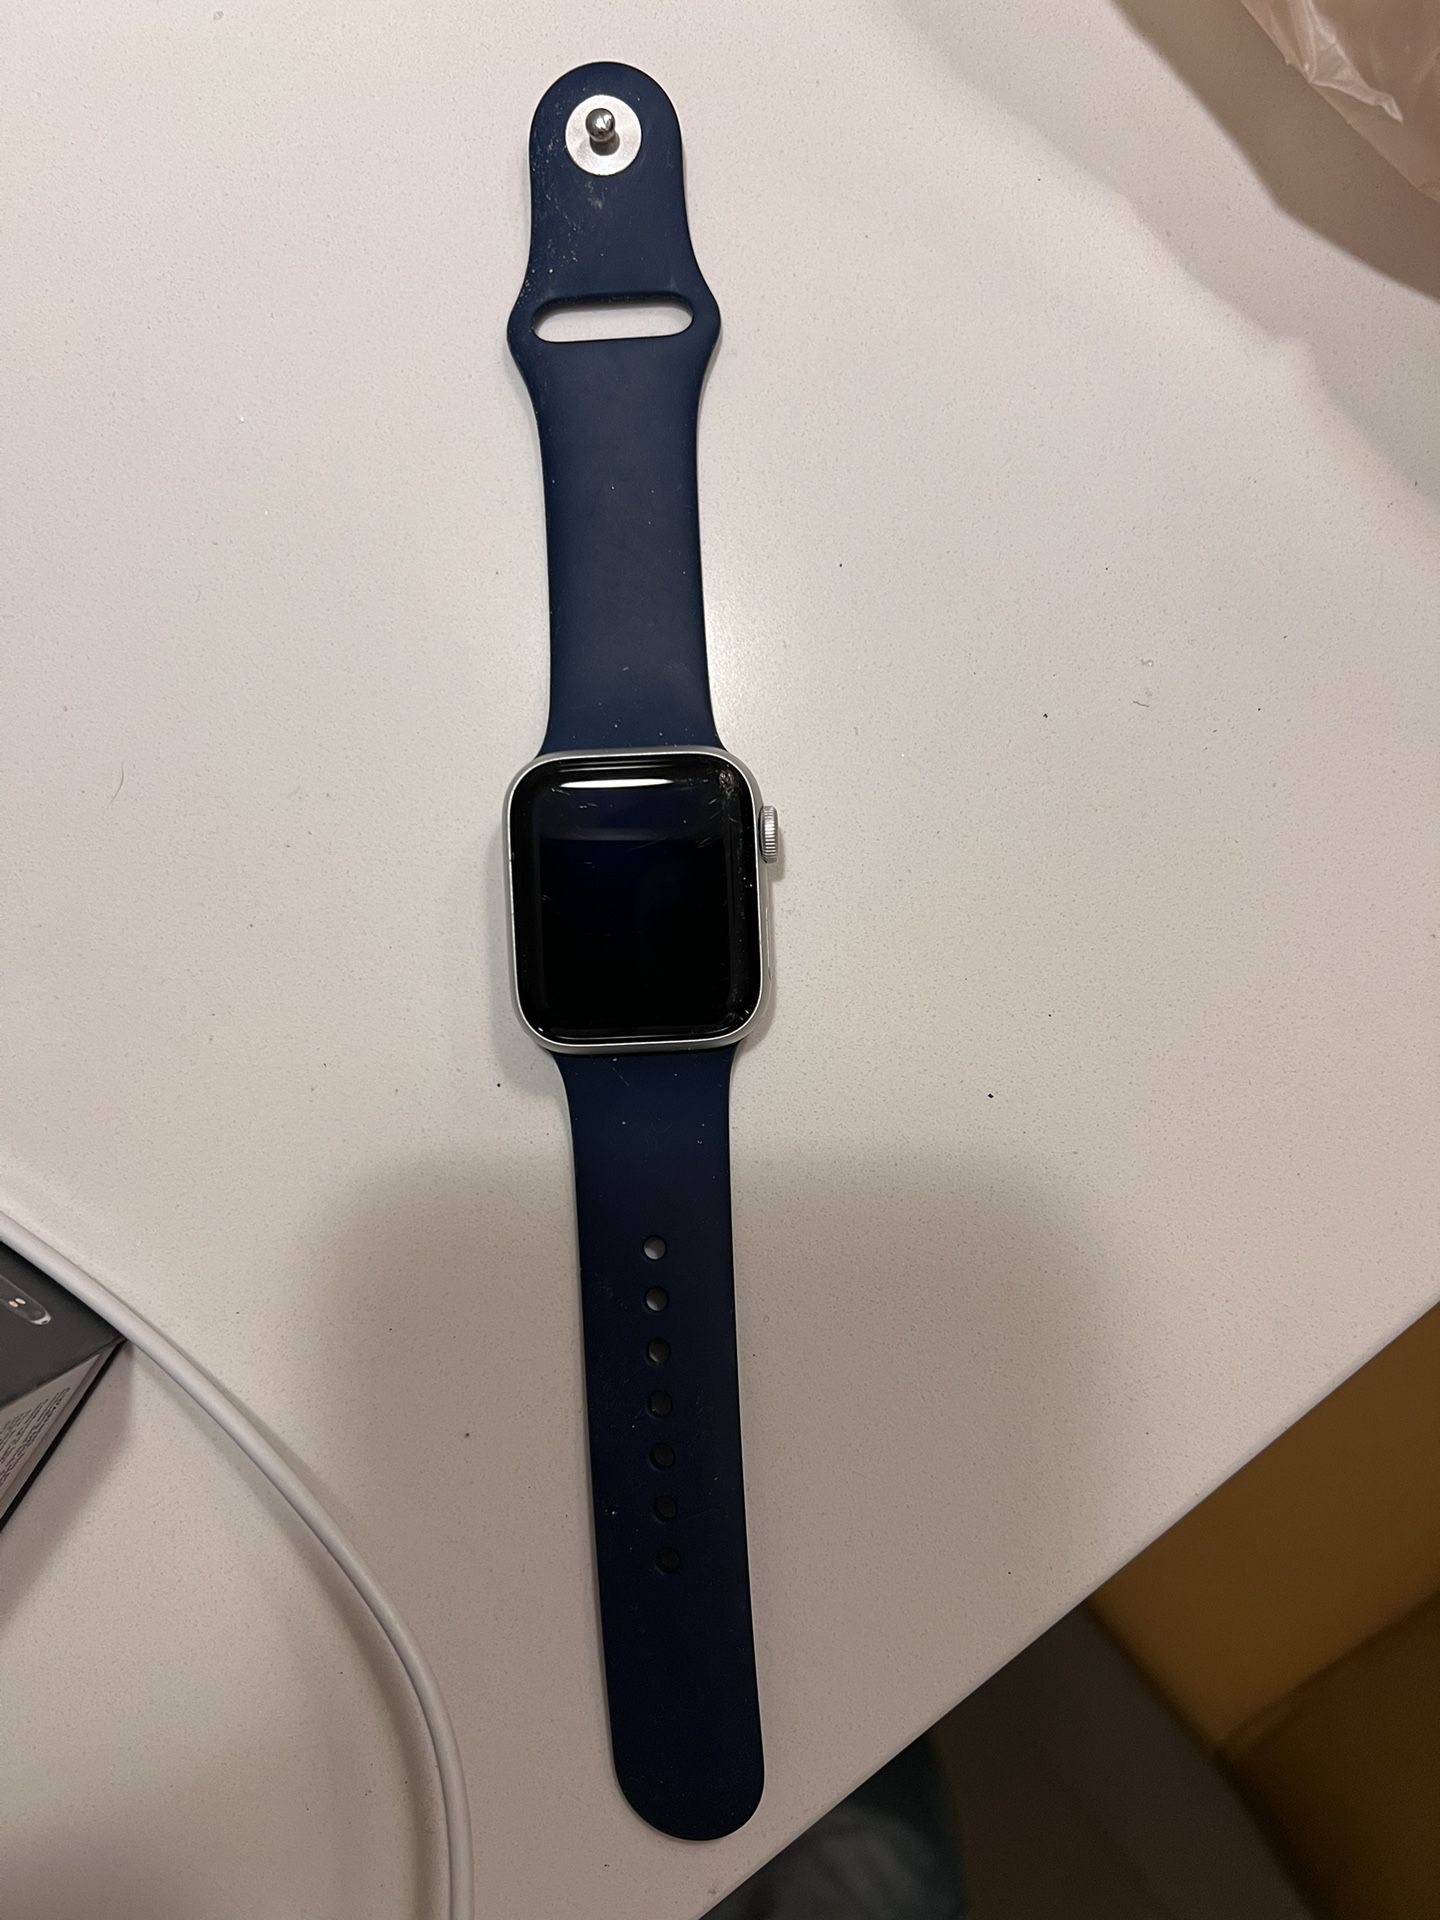 Apple Watch SE $150